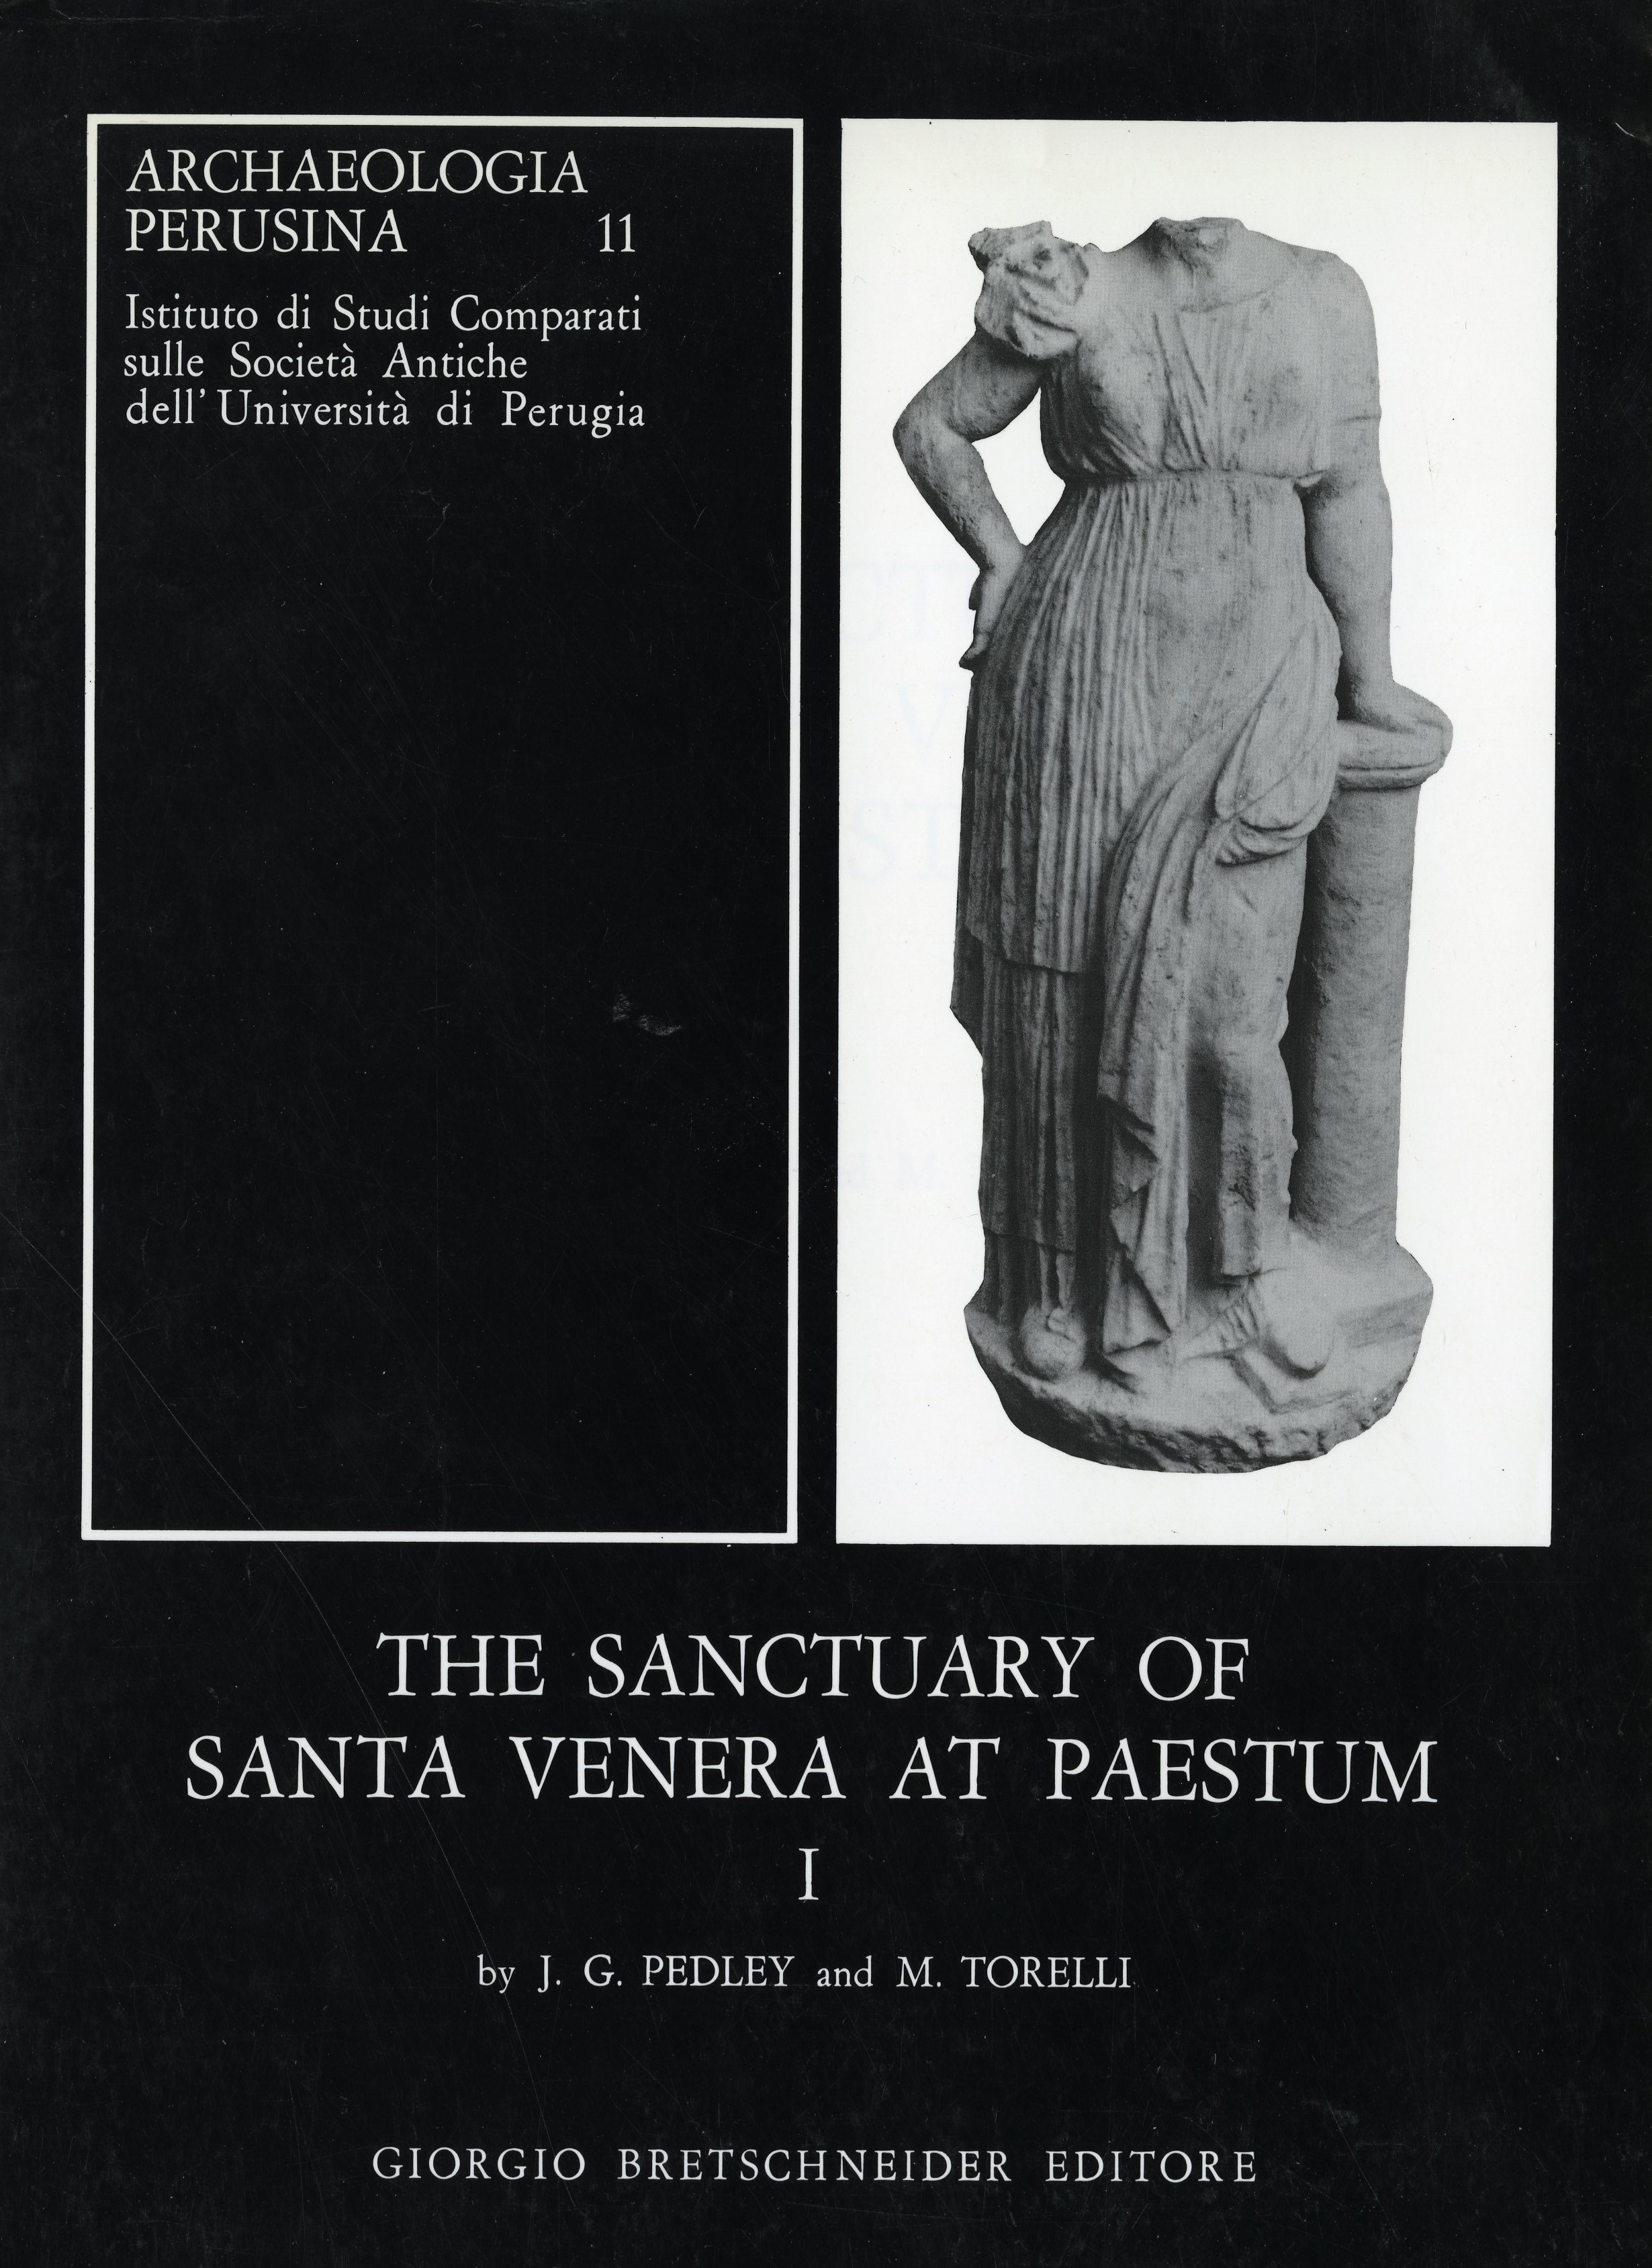 Santa Venera Book Cover Image